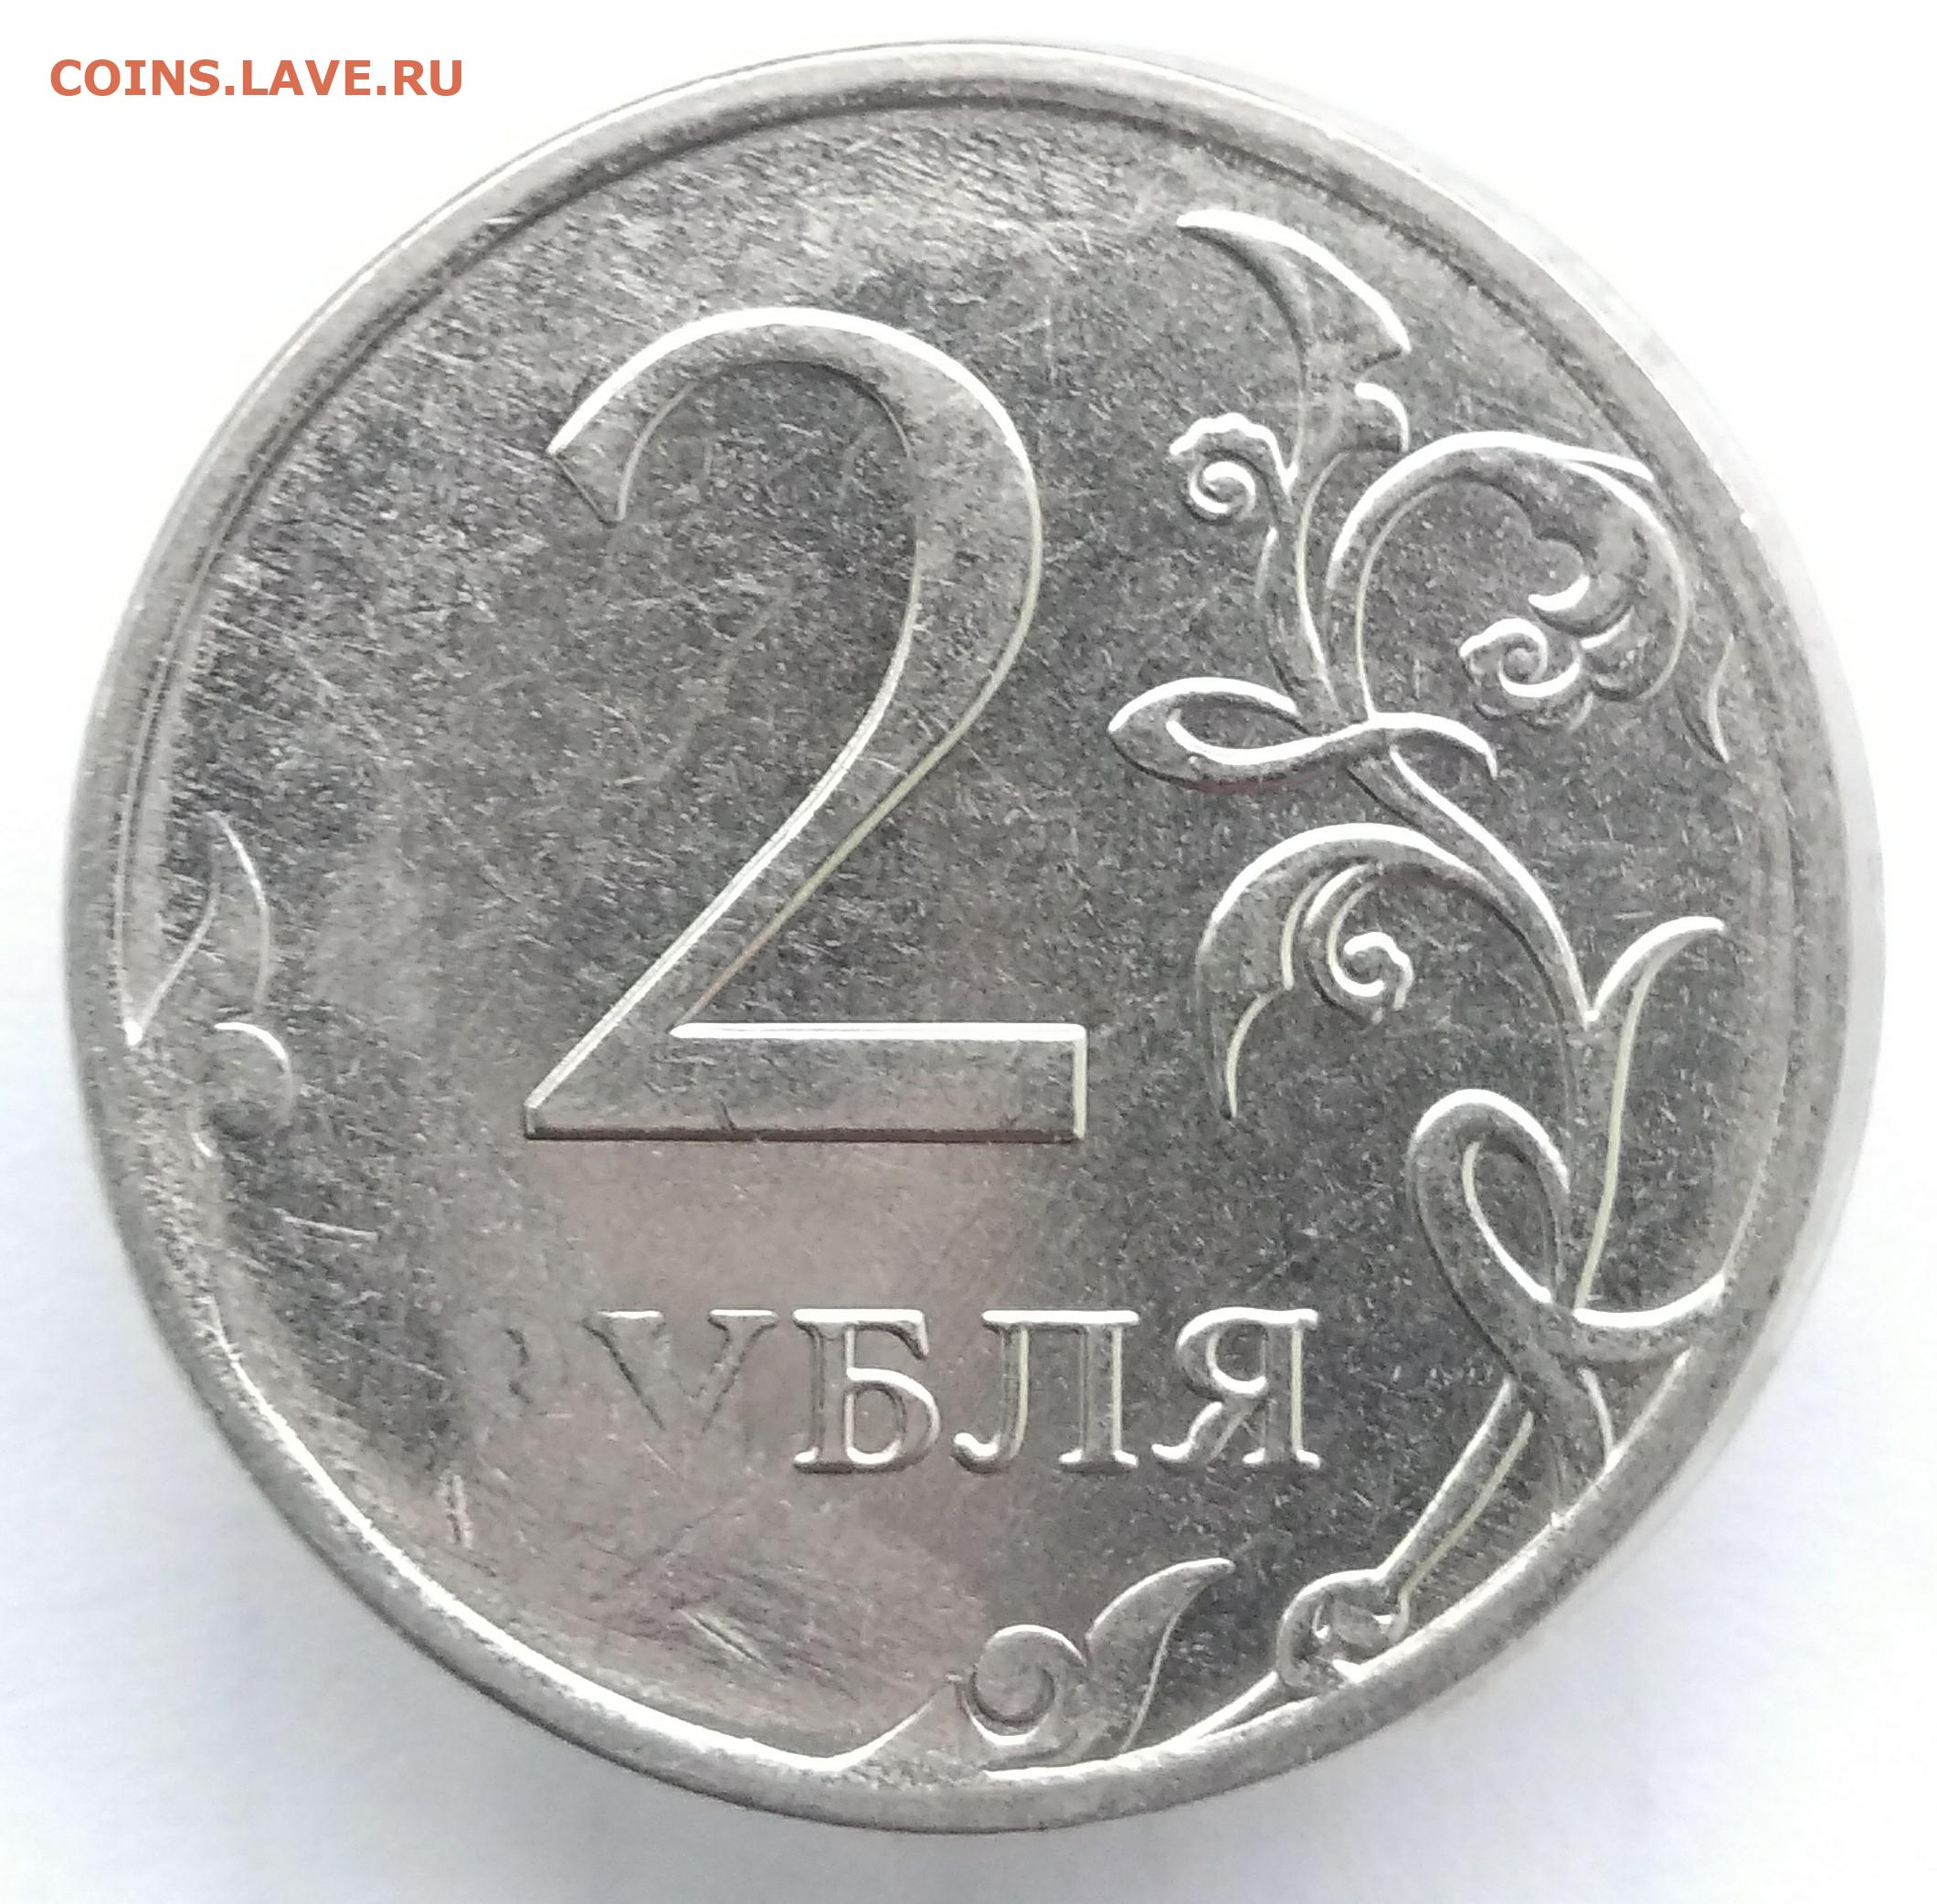 2 рубль россии. Монета 2 рубля. Монета 2 рубля с браком. Бракованная монета 2 рубля. Бракованные монеты 2 рубля.